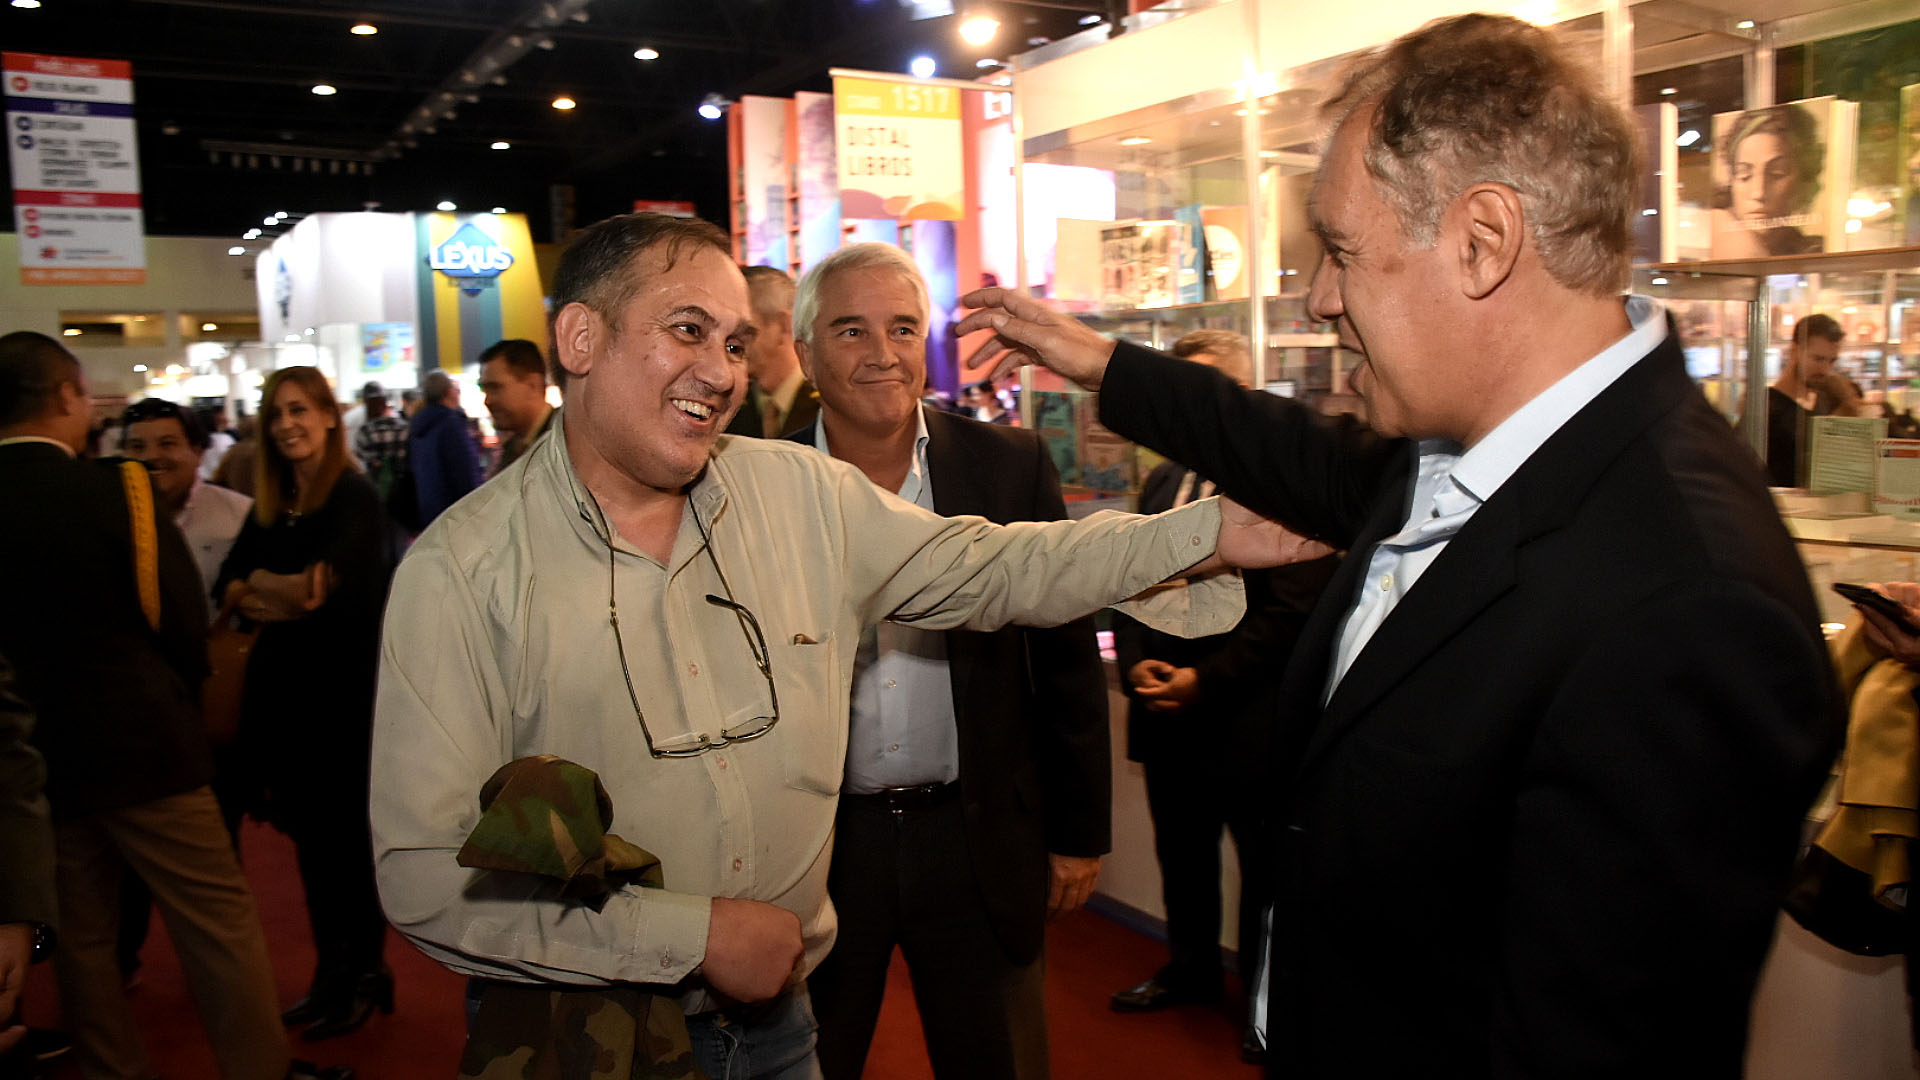 Antes del evento, Jorge “Beto” Altieri recibió el saludo del fundador de Infobae, Daniel Hadad